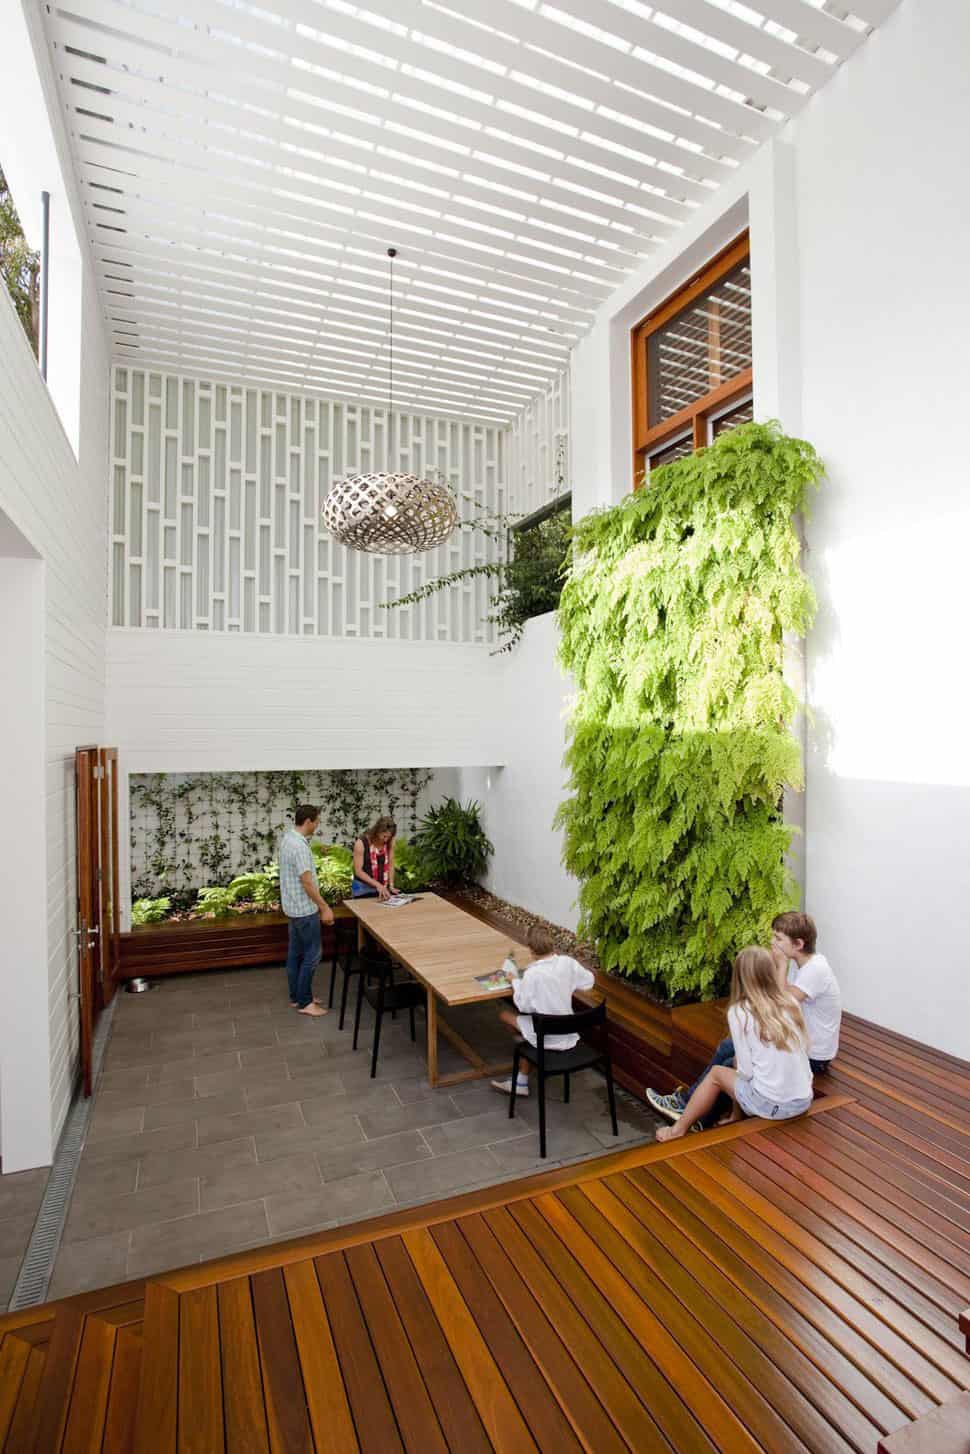 Stunningly Reinvented Australian Home Features Towering Indoor-Outdoor Courtyard